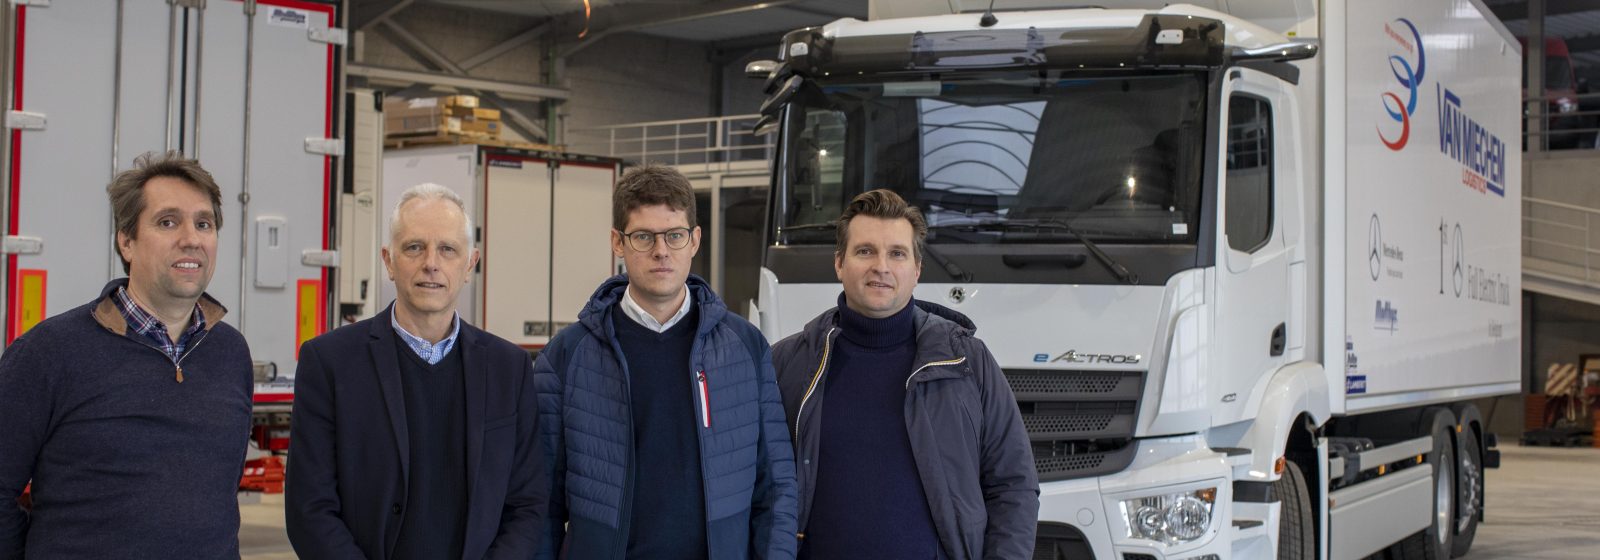 Elektrische truck Van Mieghem - V.l.n.r. Joris Matthys, Rudy Vanderperren, Laurent Van Mieghem en Bart Matthys voor de eerste Belgische eActros.